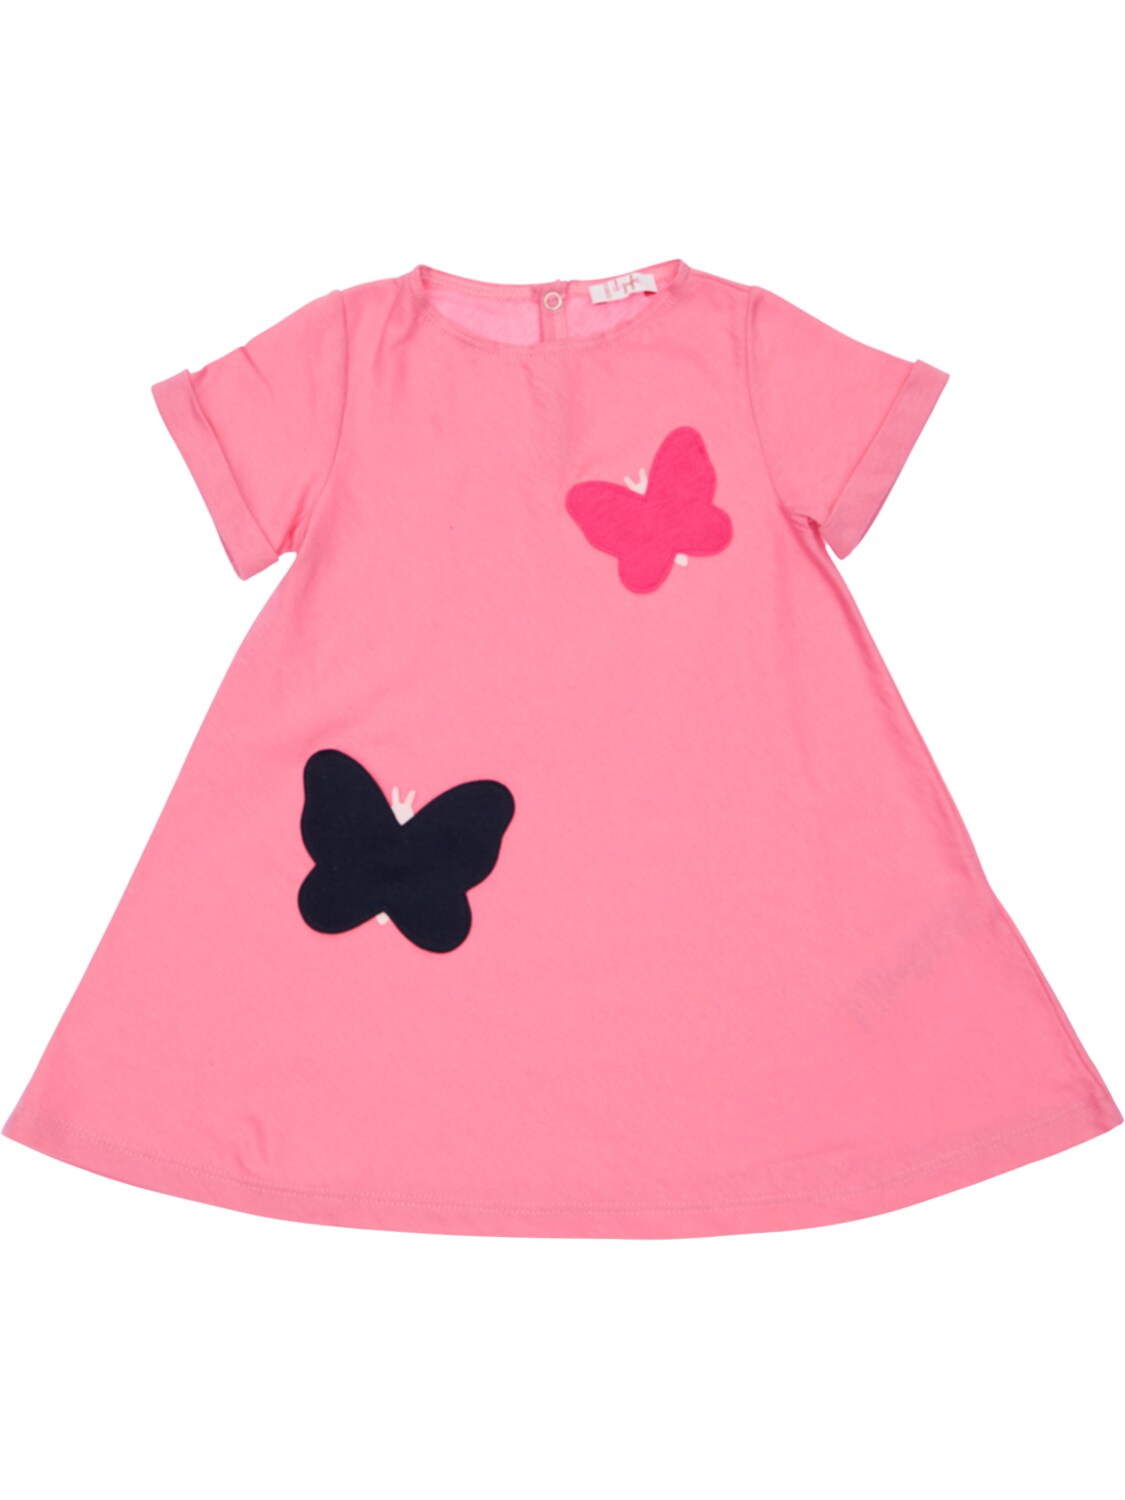 Il Gufo Babies' Butterflies Cotton Jersey Dress In Fuchsia